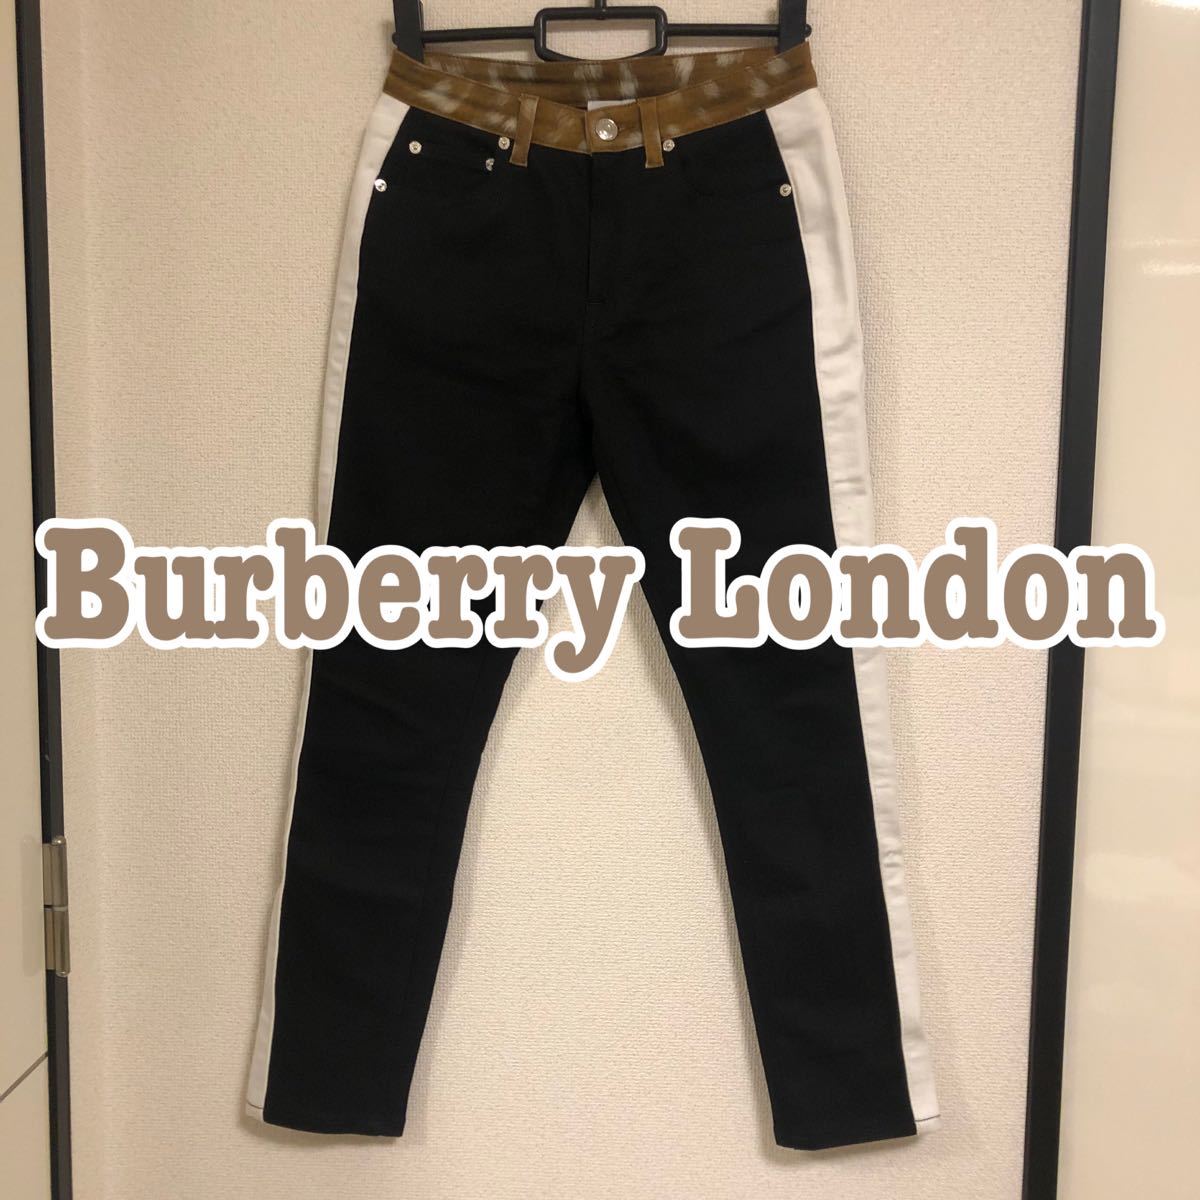 Burberry London スキニーパンツ W26